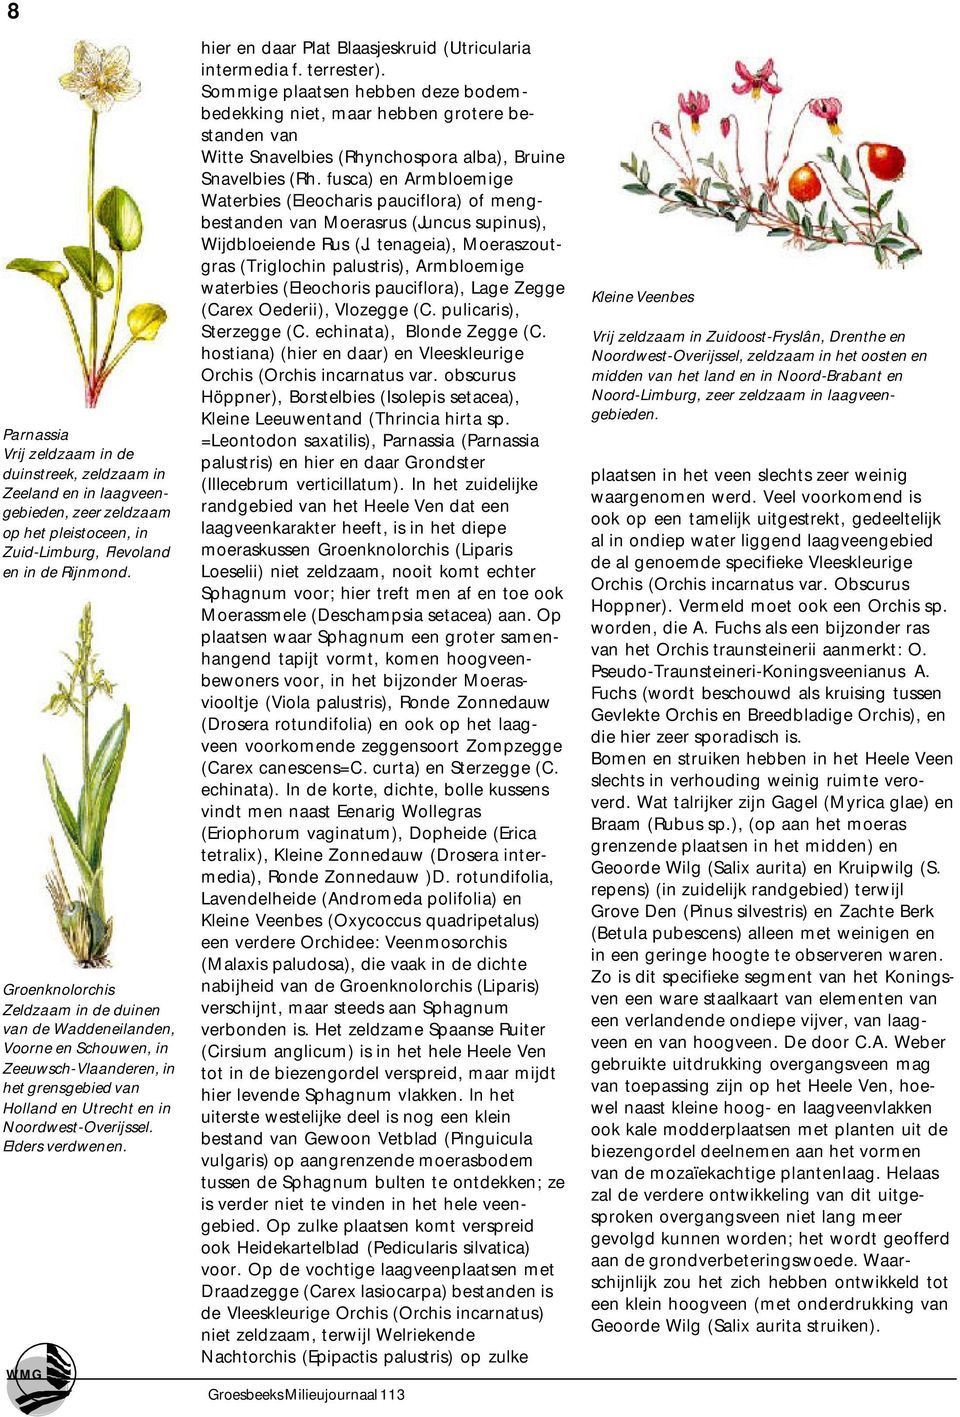 WMG hier en daar Plat Blaasjeskruid (Utricularia intermedia f. terrester).